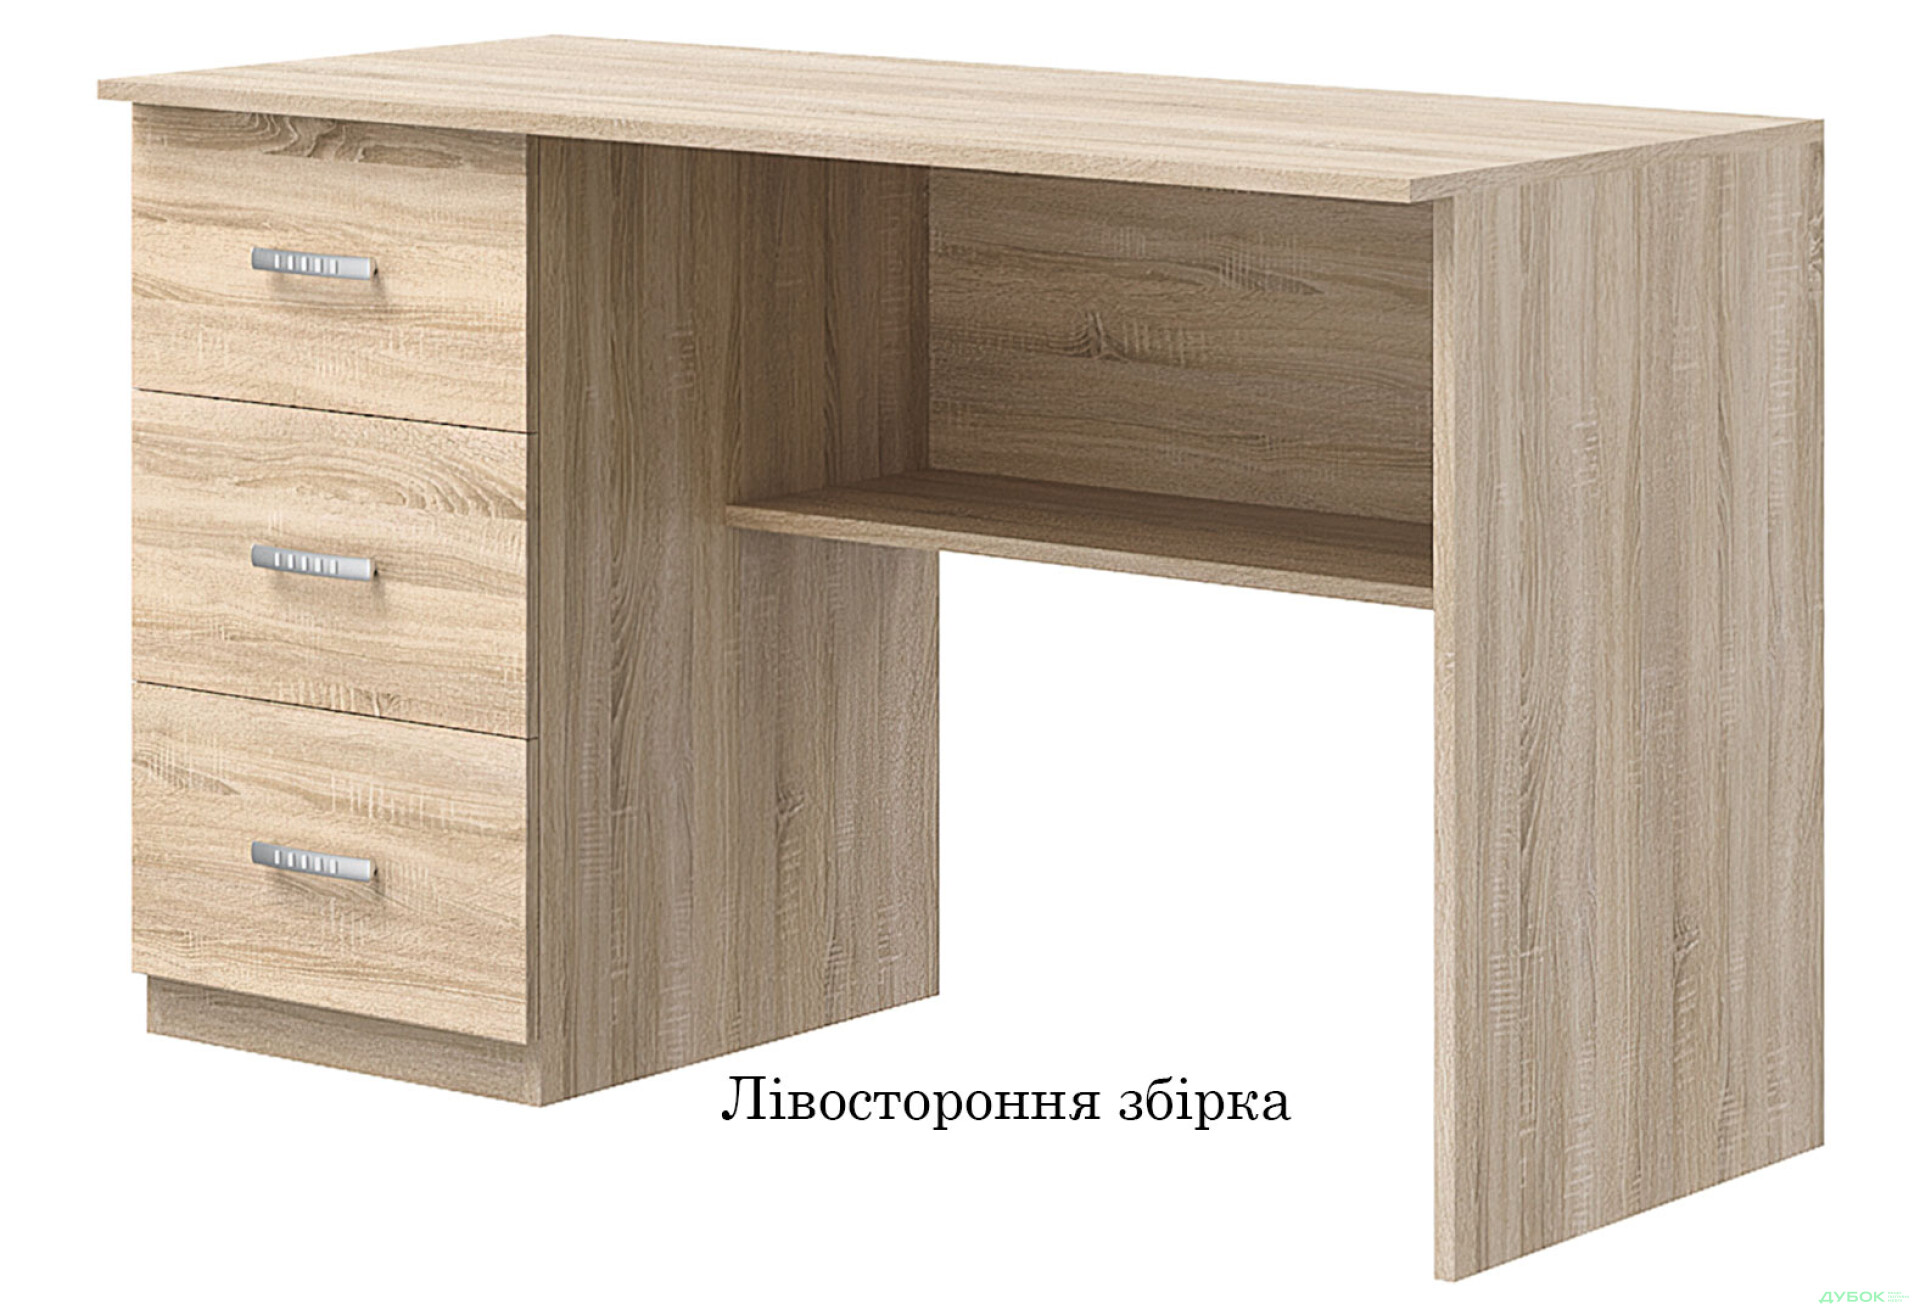 Фото 3 - Стол письменный Киевский стандарт Е4 СМ 120x60 см с ящиками